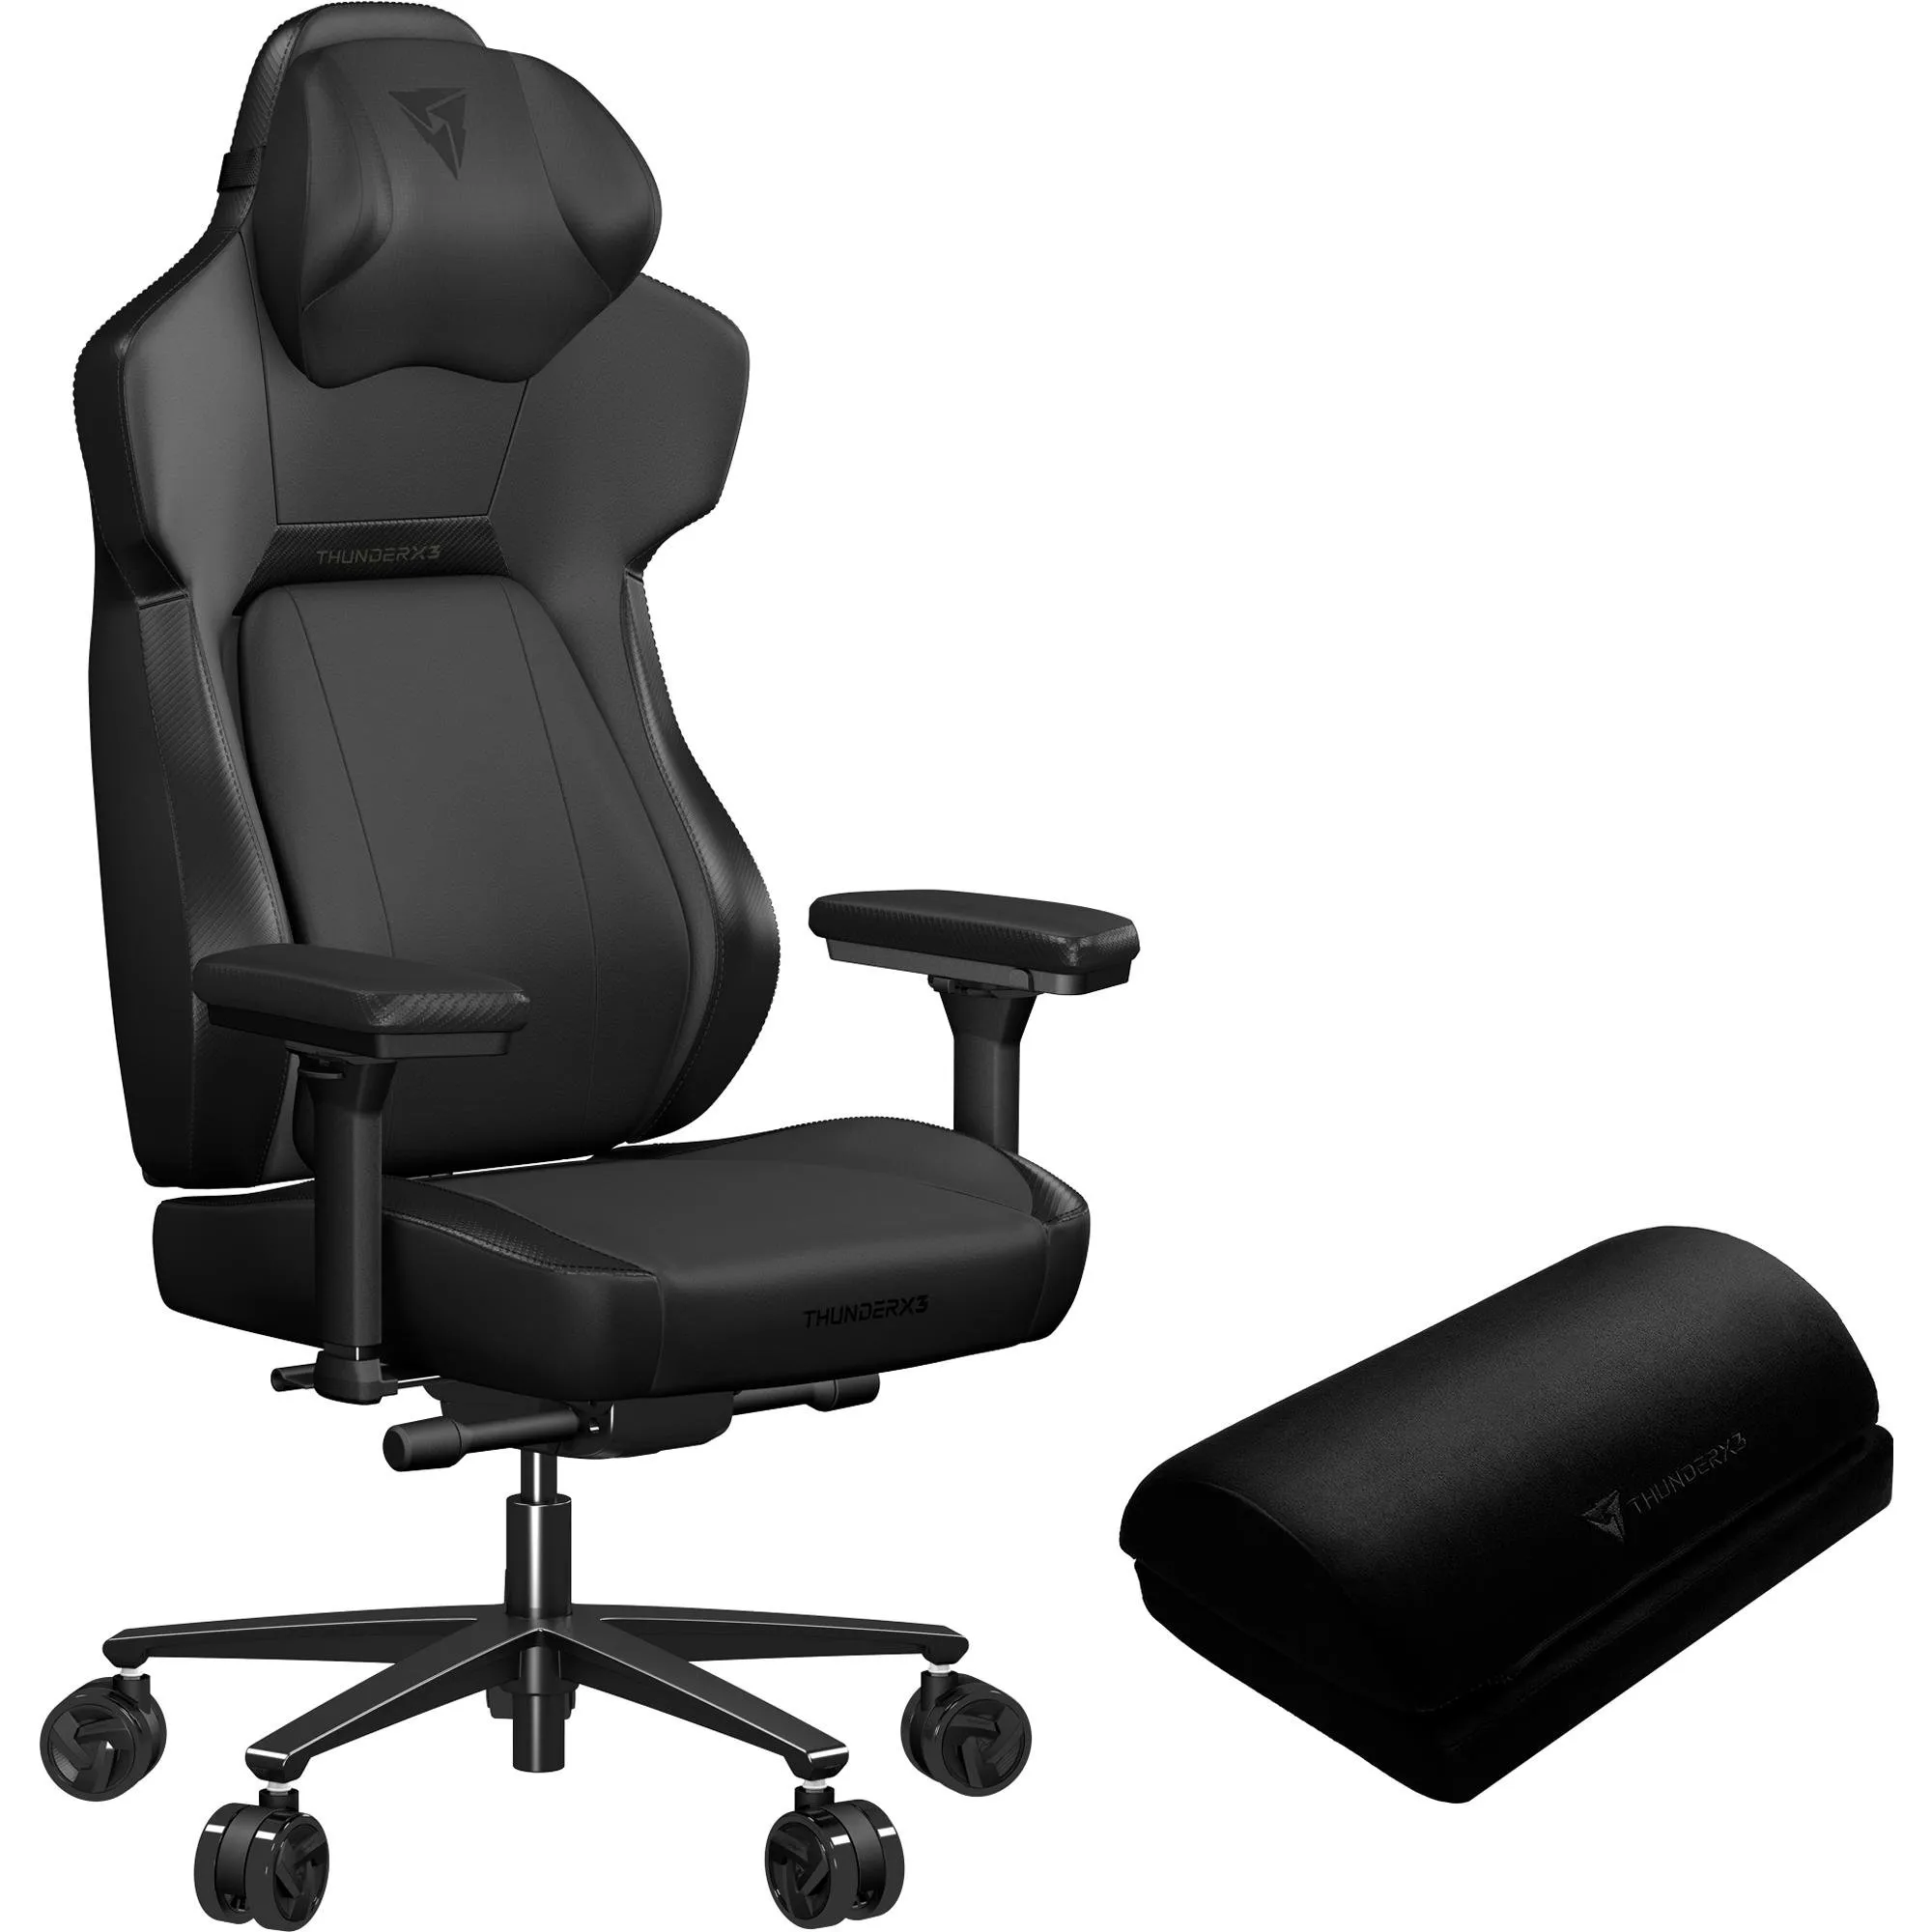 Cadeira Gamer ThunderX3 CORE Modern Preta por 3.548,99 à vista no boleto/pix ou parcele em até 12x sem juros. Compre na loja Mundomax!